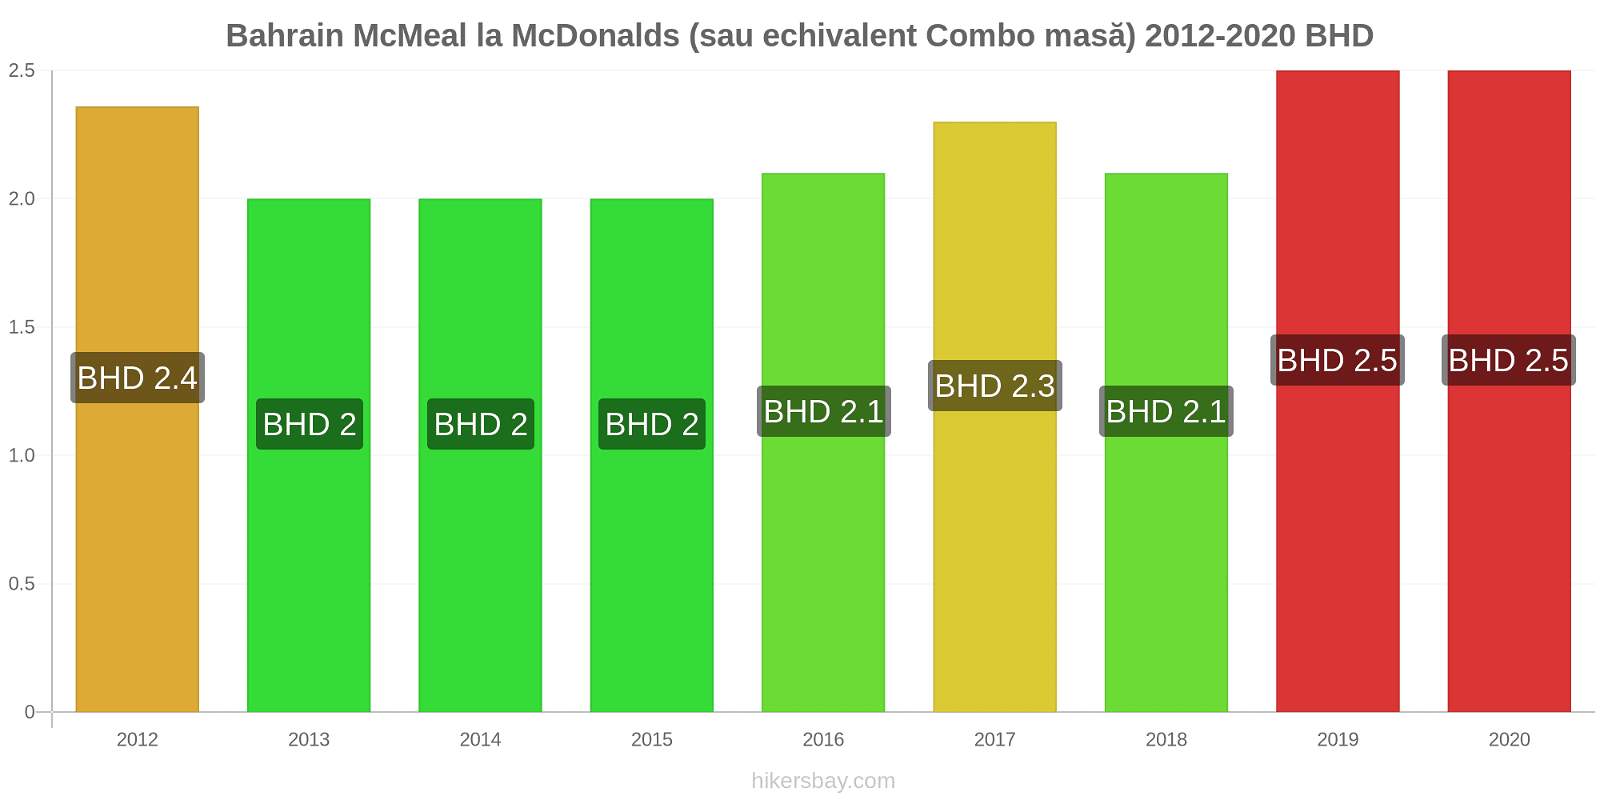 Bahrain modificări de preț McMeal la McDonalds (sau echivalent Combo masă) hikersbay.com